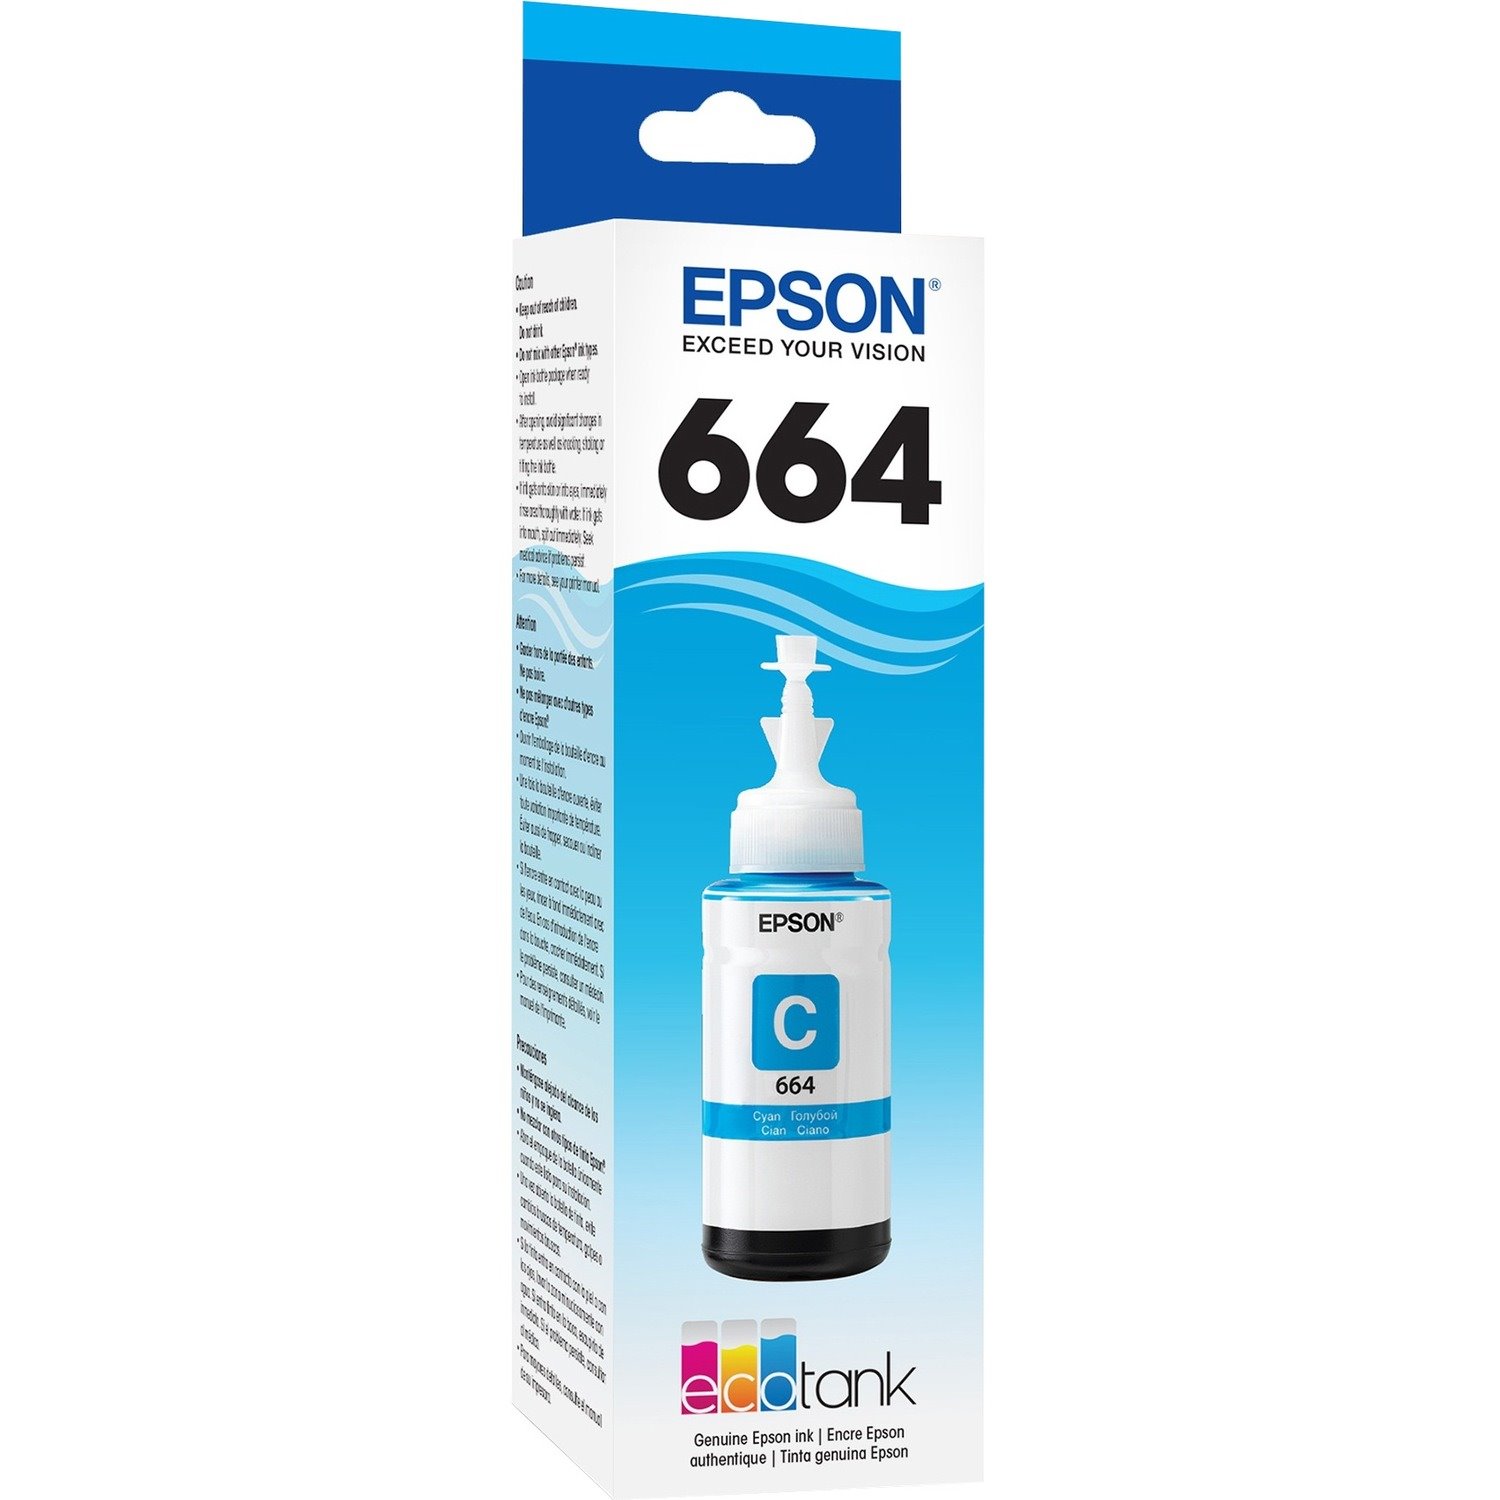 Epson T664 Ink Refill Kit